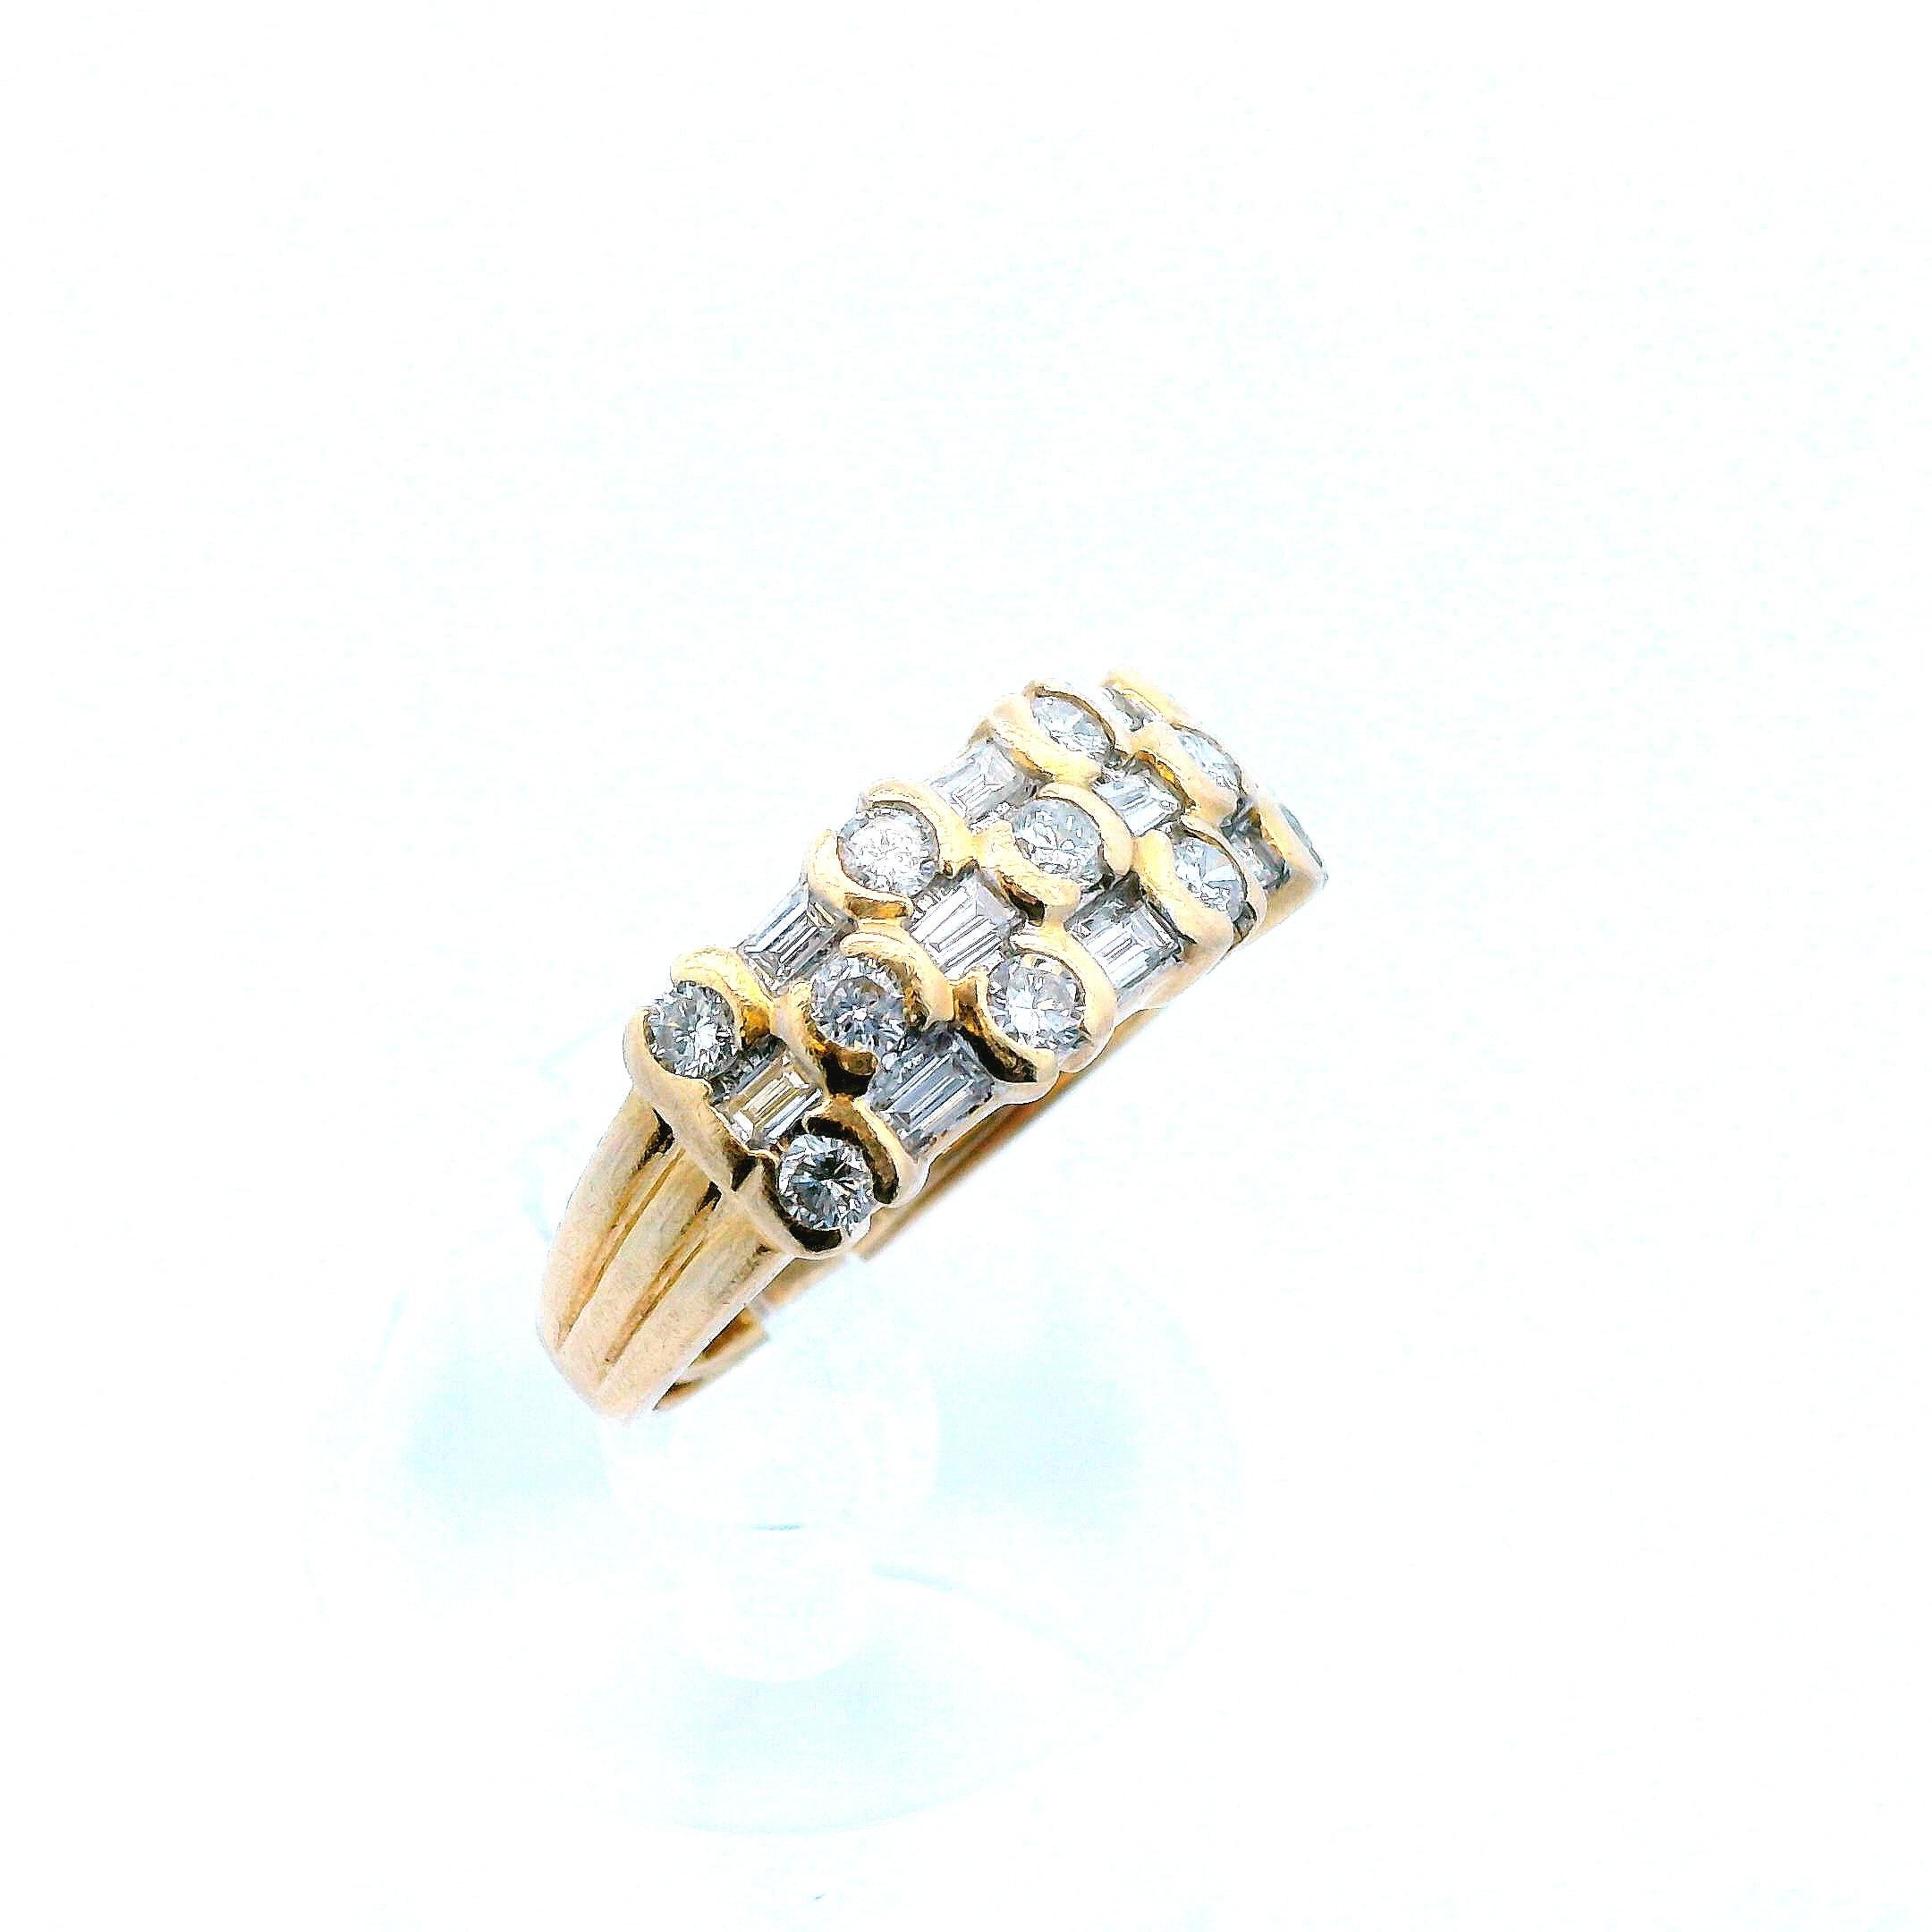 Dieser moderne Ring aus 14 Karat Gelbgold mit Diamanten im Baguette- und Rundschliff ist unglaublich. Das einzigartige Design ergibt sich aus der abwechselnden Anordnung der Diamanten im Baguette- und Rundschliff und schafft einen Nugget-Look, der